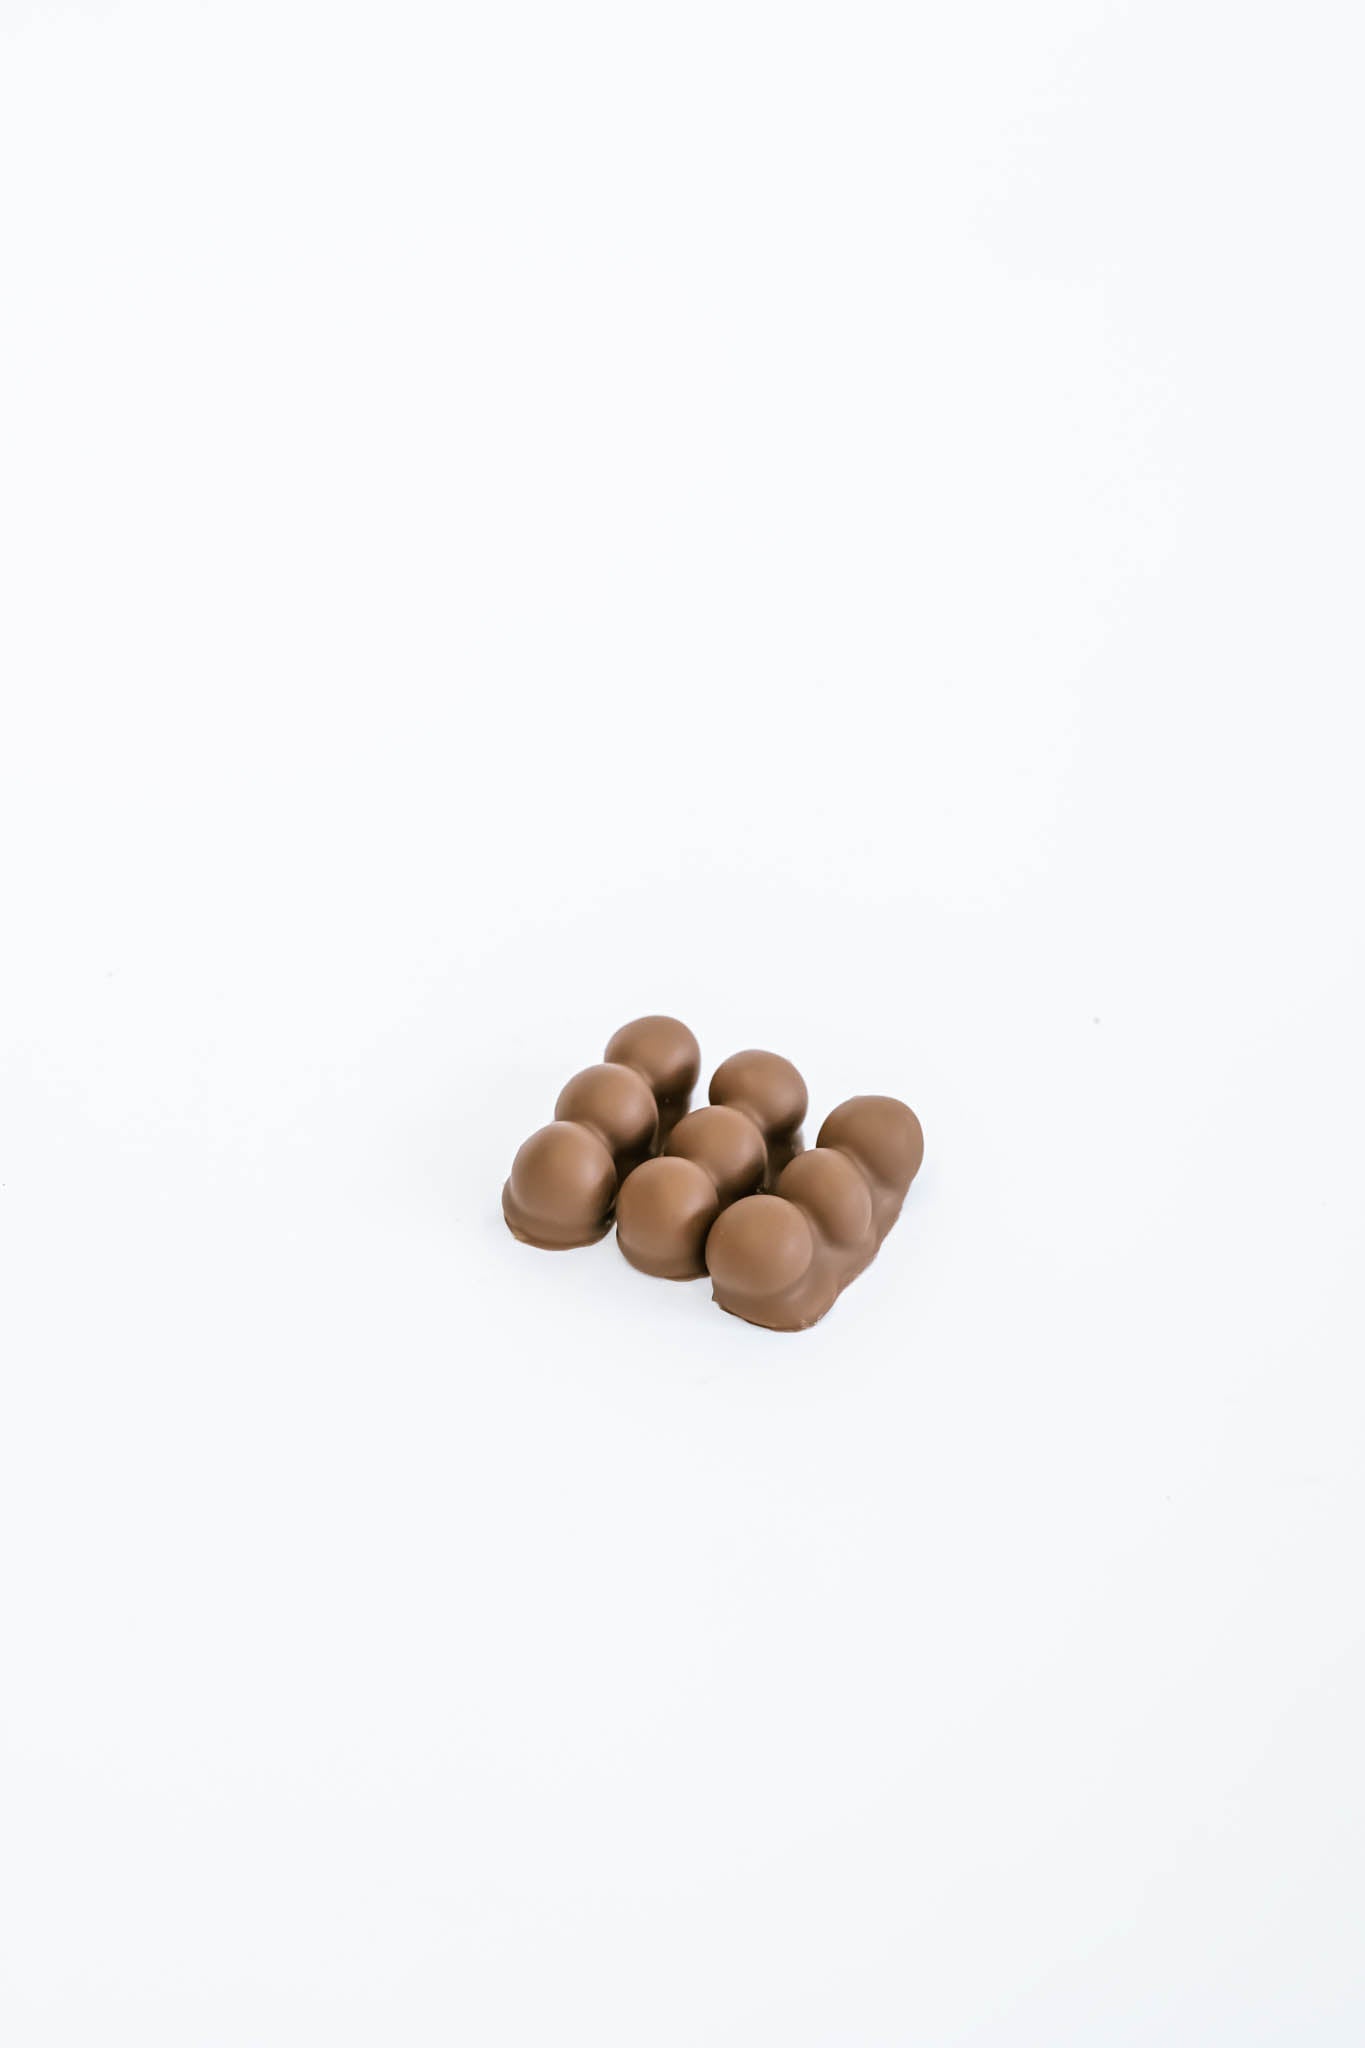 3 Hazelnuts